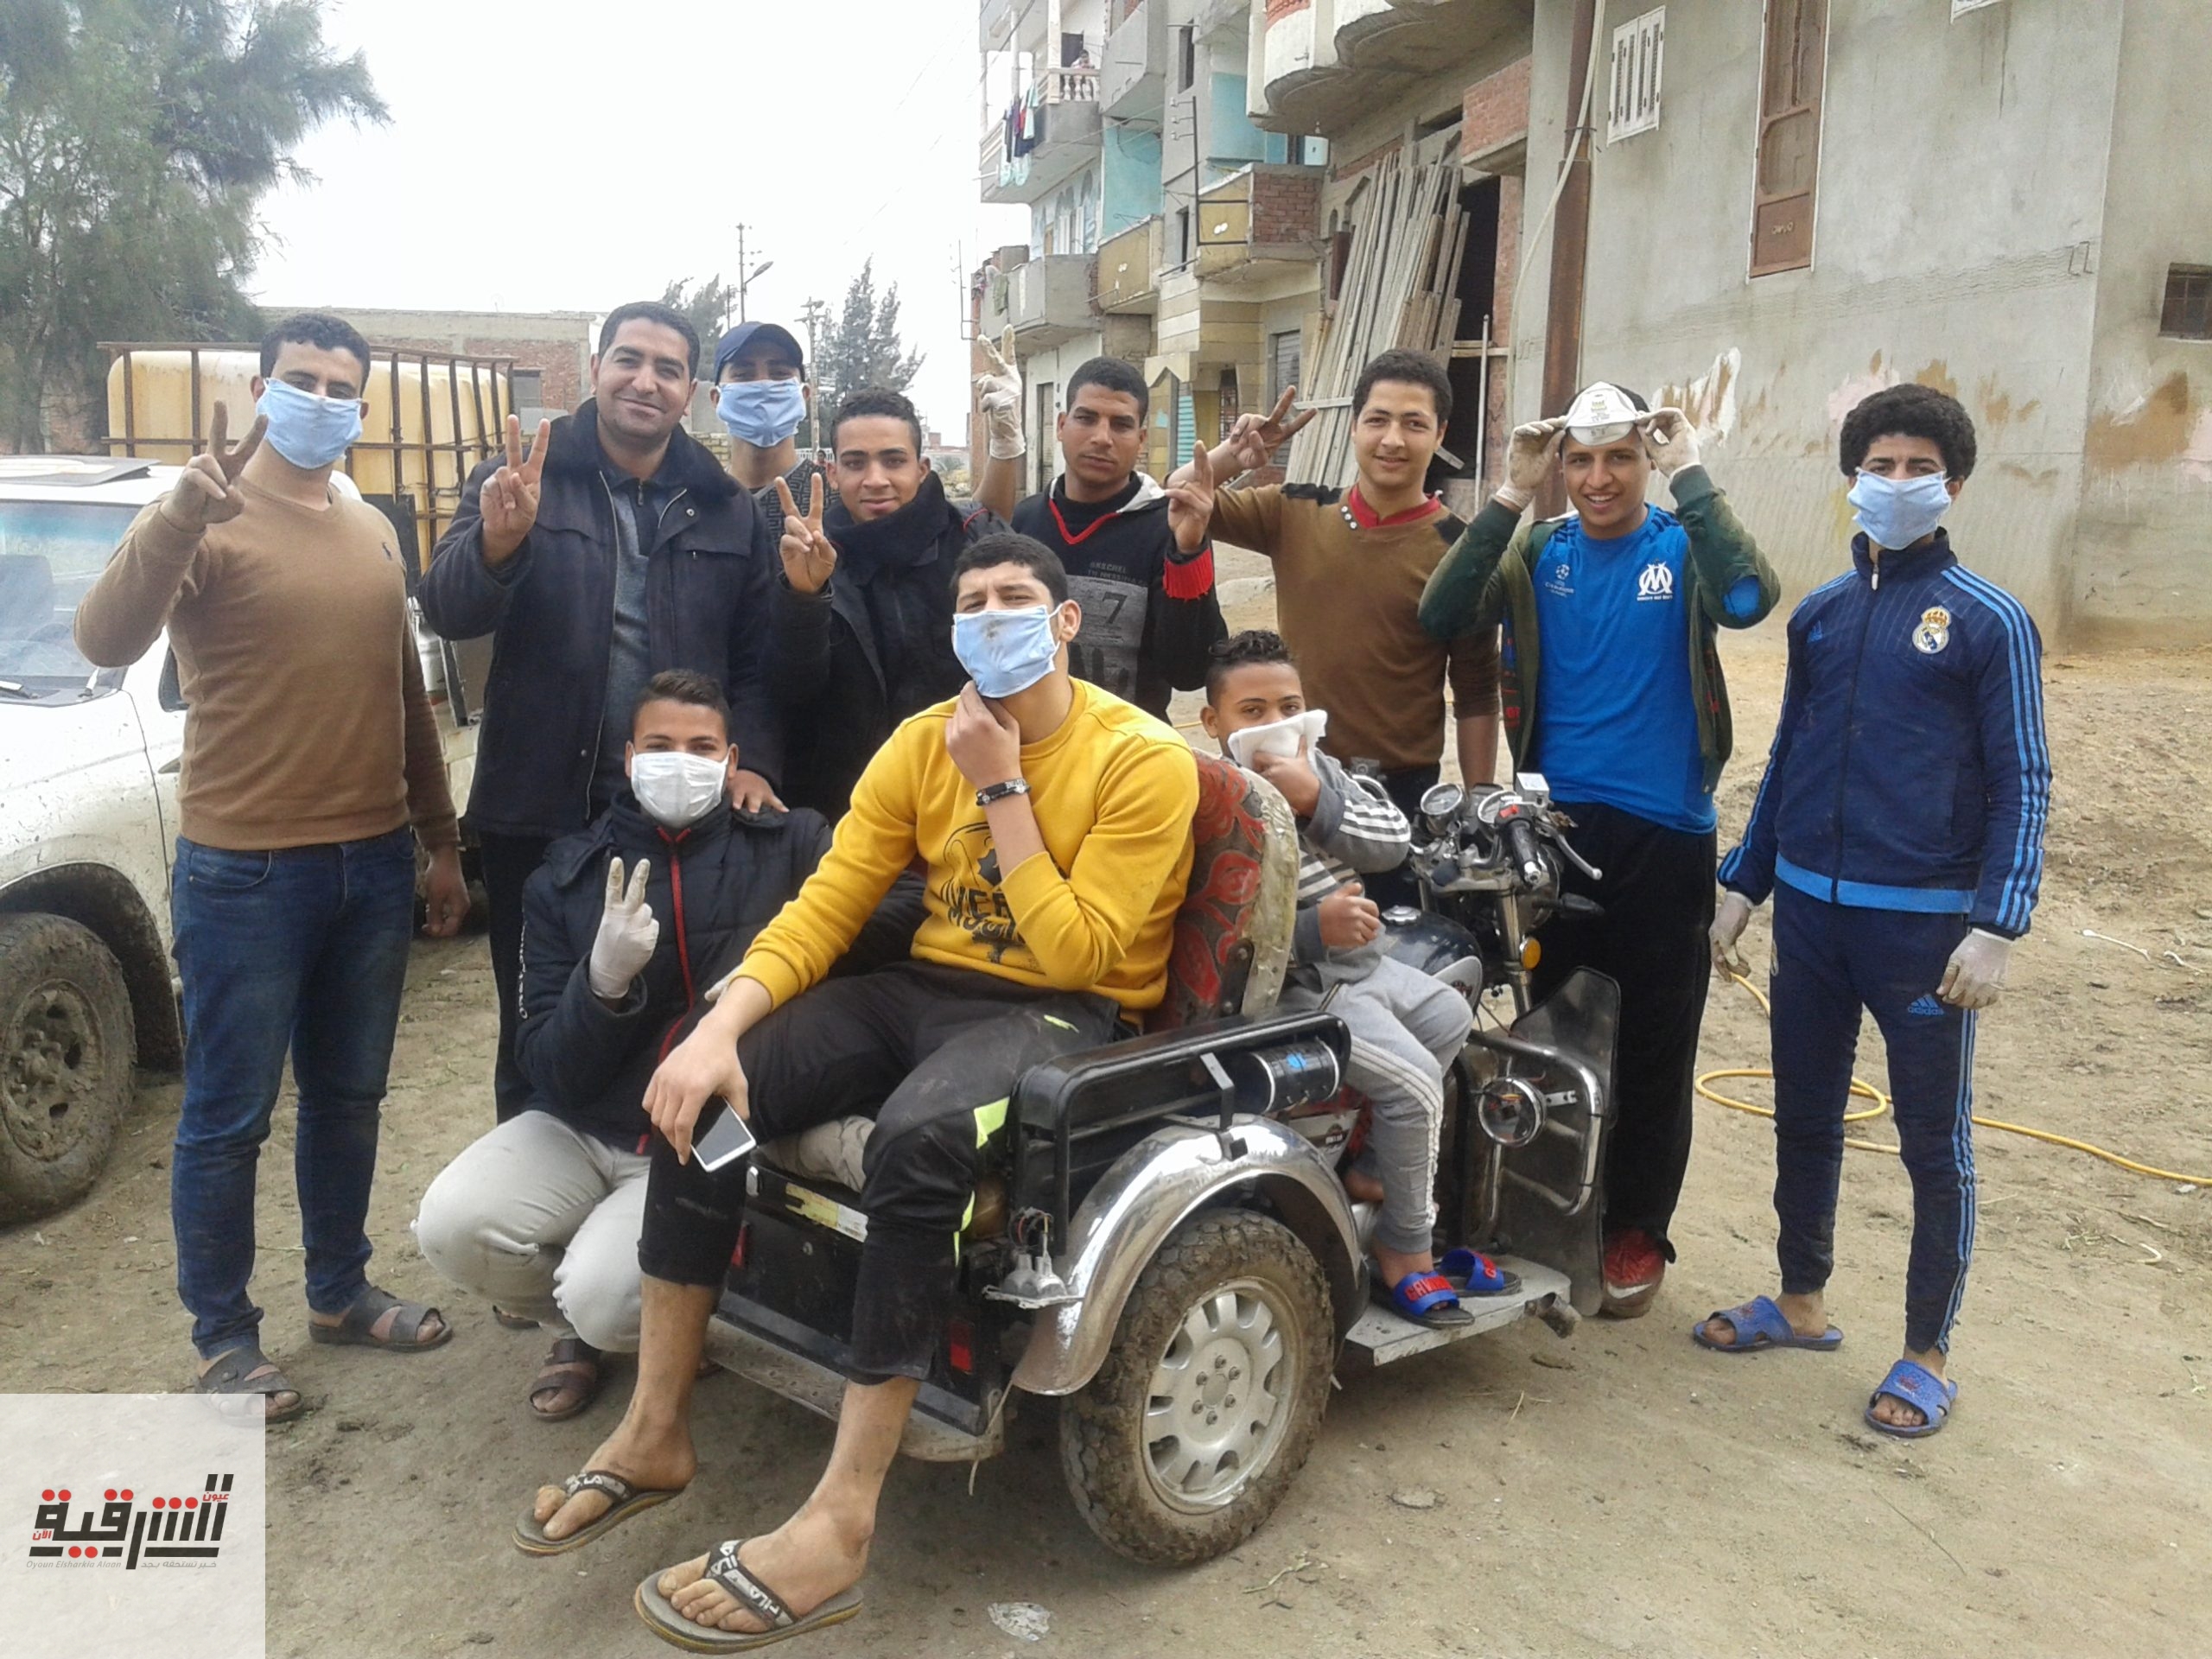 ٥٠ شاب يشاركون فى حملة تطهير شوارع العراقى فى أبوحماد لمواجهة فيروس كورونا